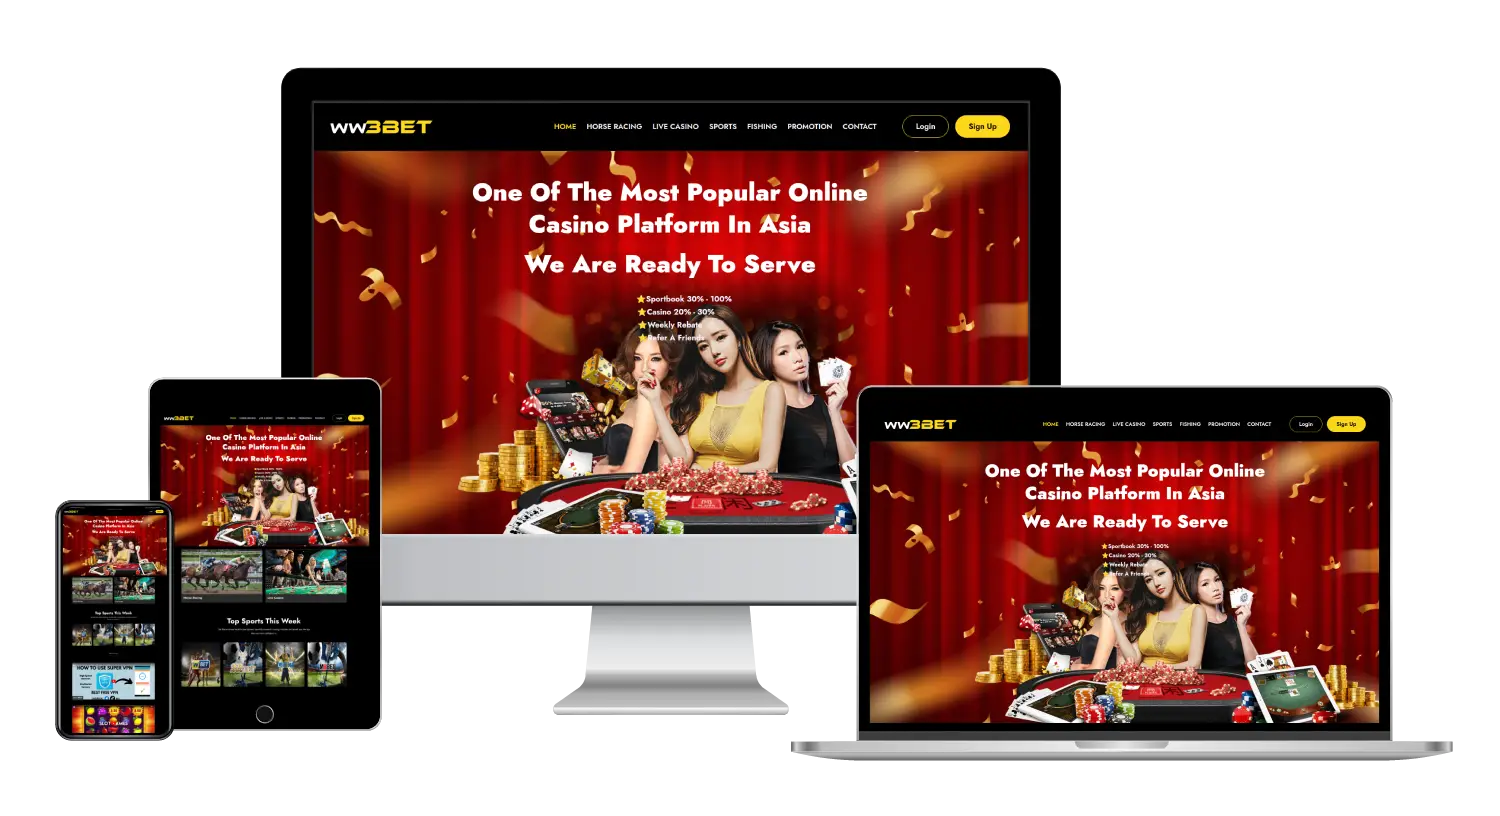 Ww3bet.com is one of the best online casino website